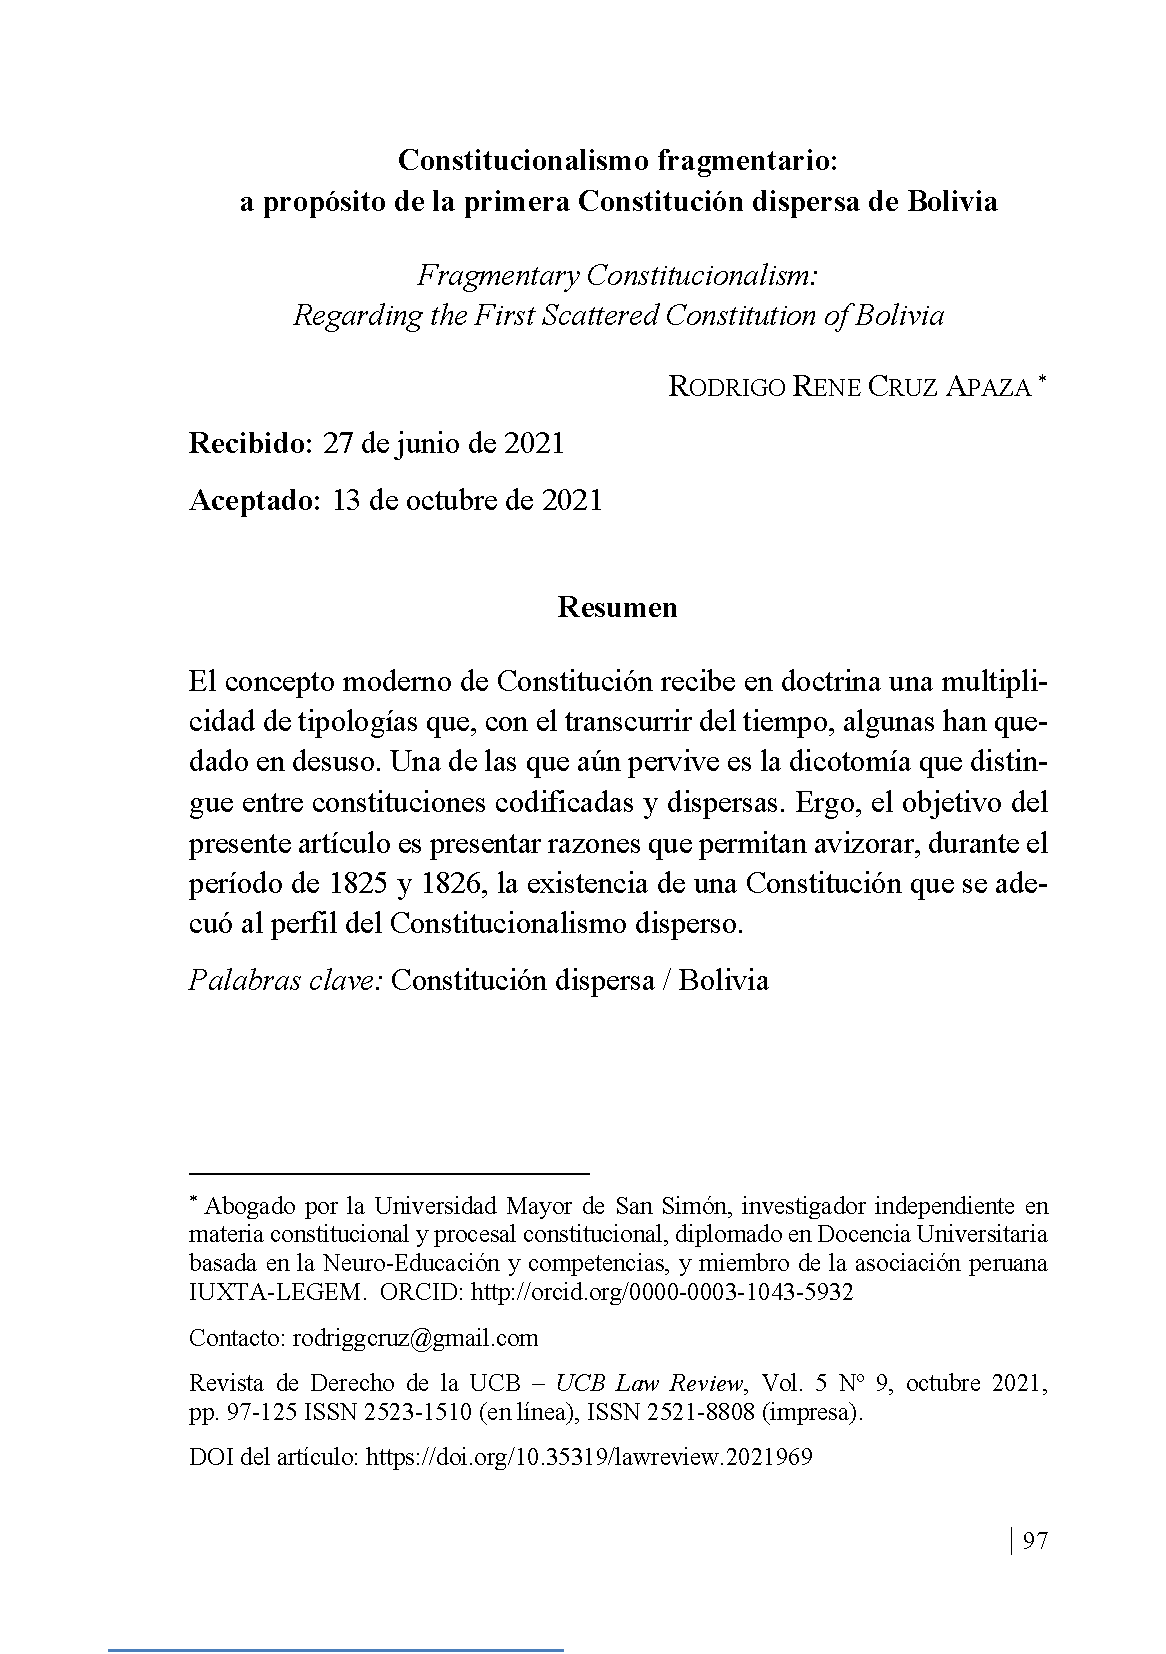 Constitucionalismo fragmentario: a propósito de la primera Constitución dispersa de Bolivia